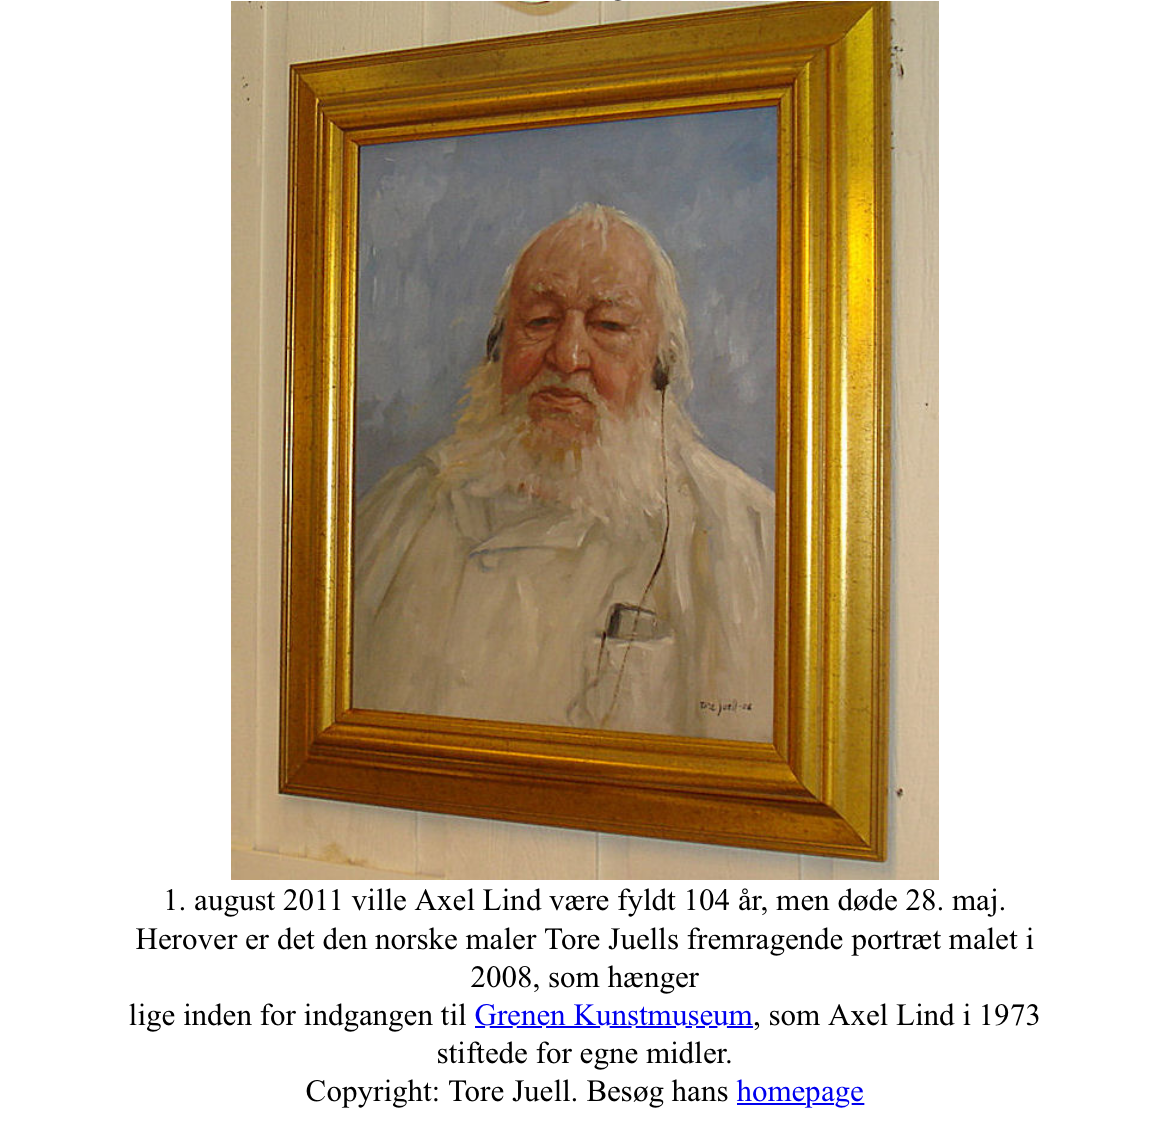 アクセル・リンド、デンマークの画家 (1907-2011) キャンバスに油彩 - no. 01900